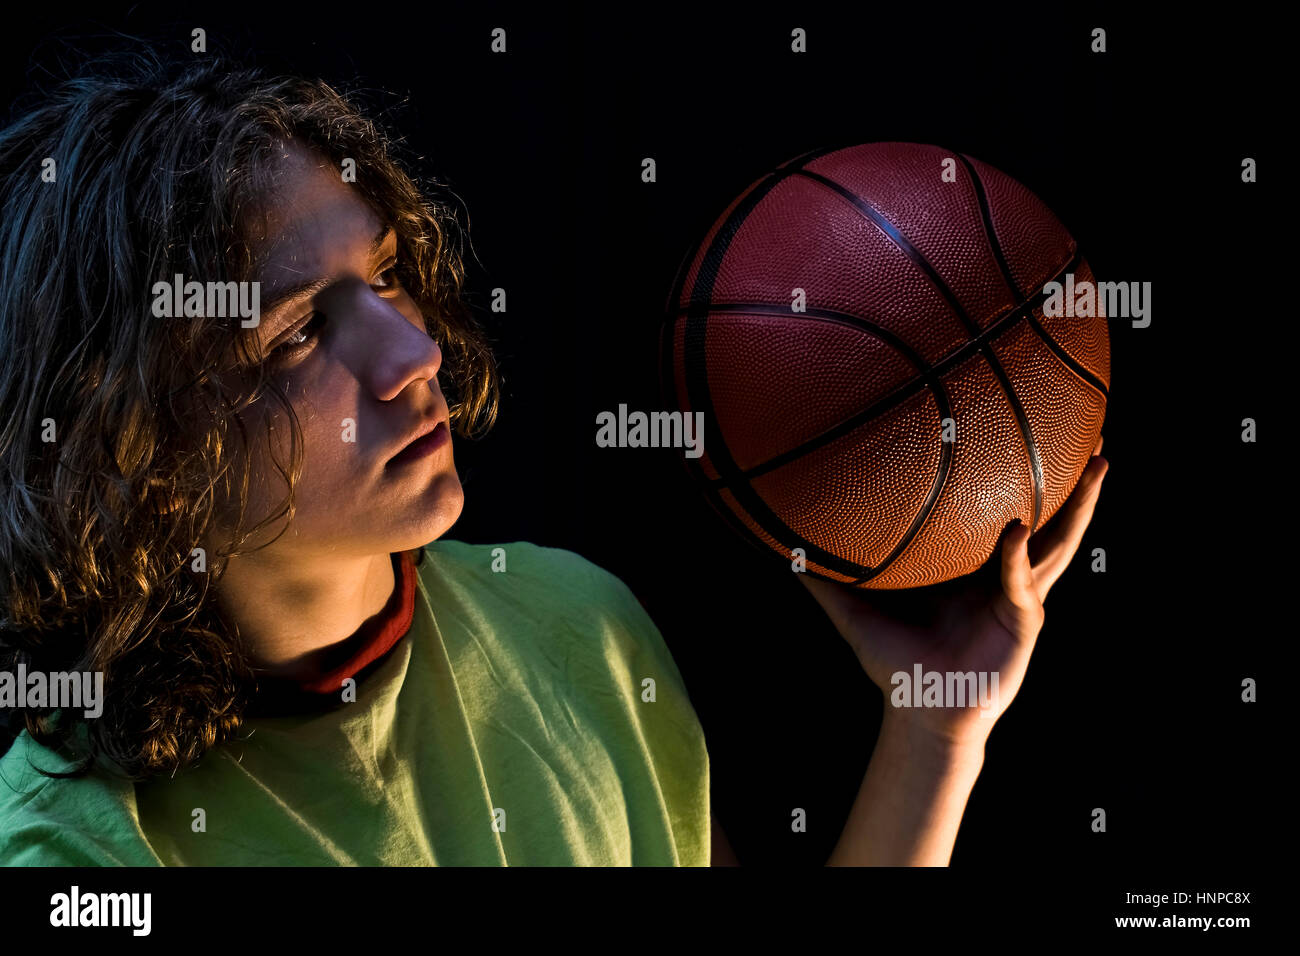 Nahaufnahme eines kleinen Jungen mit langen blonden Haaren, die mit einem grünen Trikot hält einen Basketball. Stockfoto